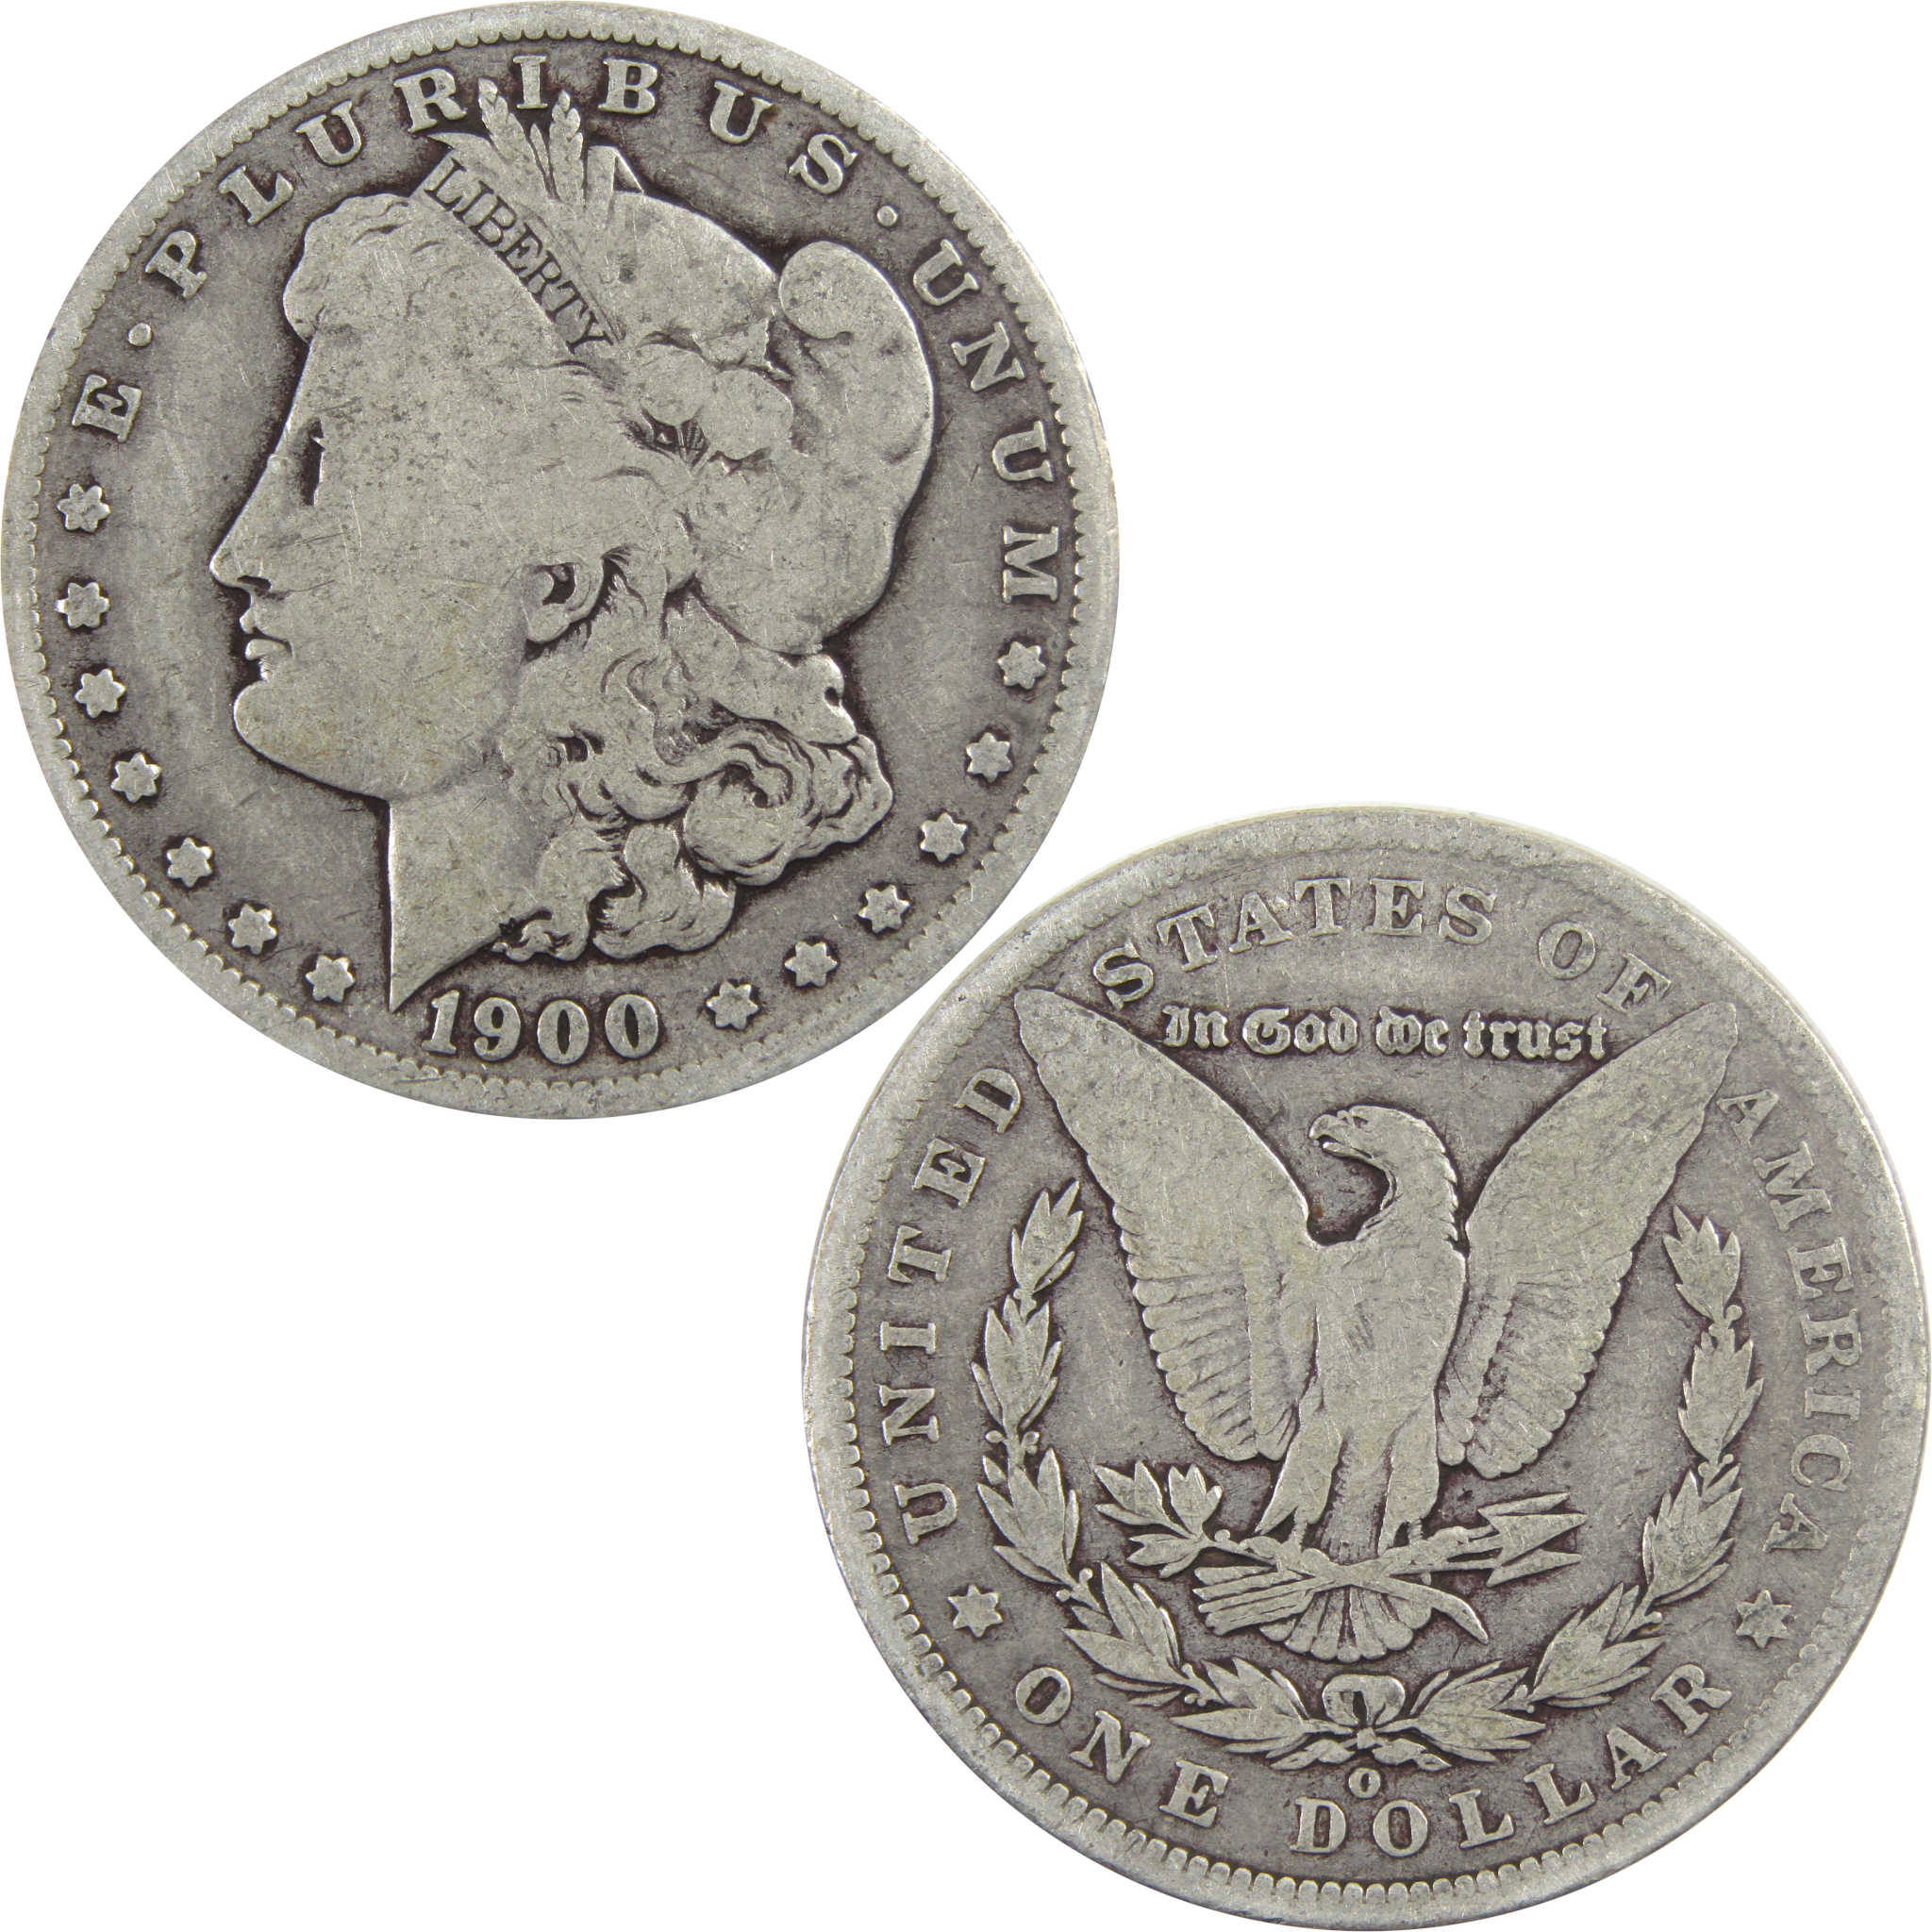 1900 O Morgan Dollar VG Very Good 90% Silver $1 Coin SKU:I5548 - Morgan coin - Morgan silver dollar - Morgan silver dollar for sale - Profile Coins &amp; Collectibles